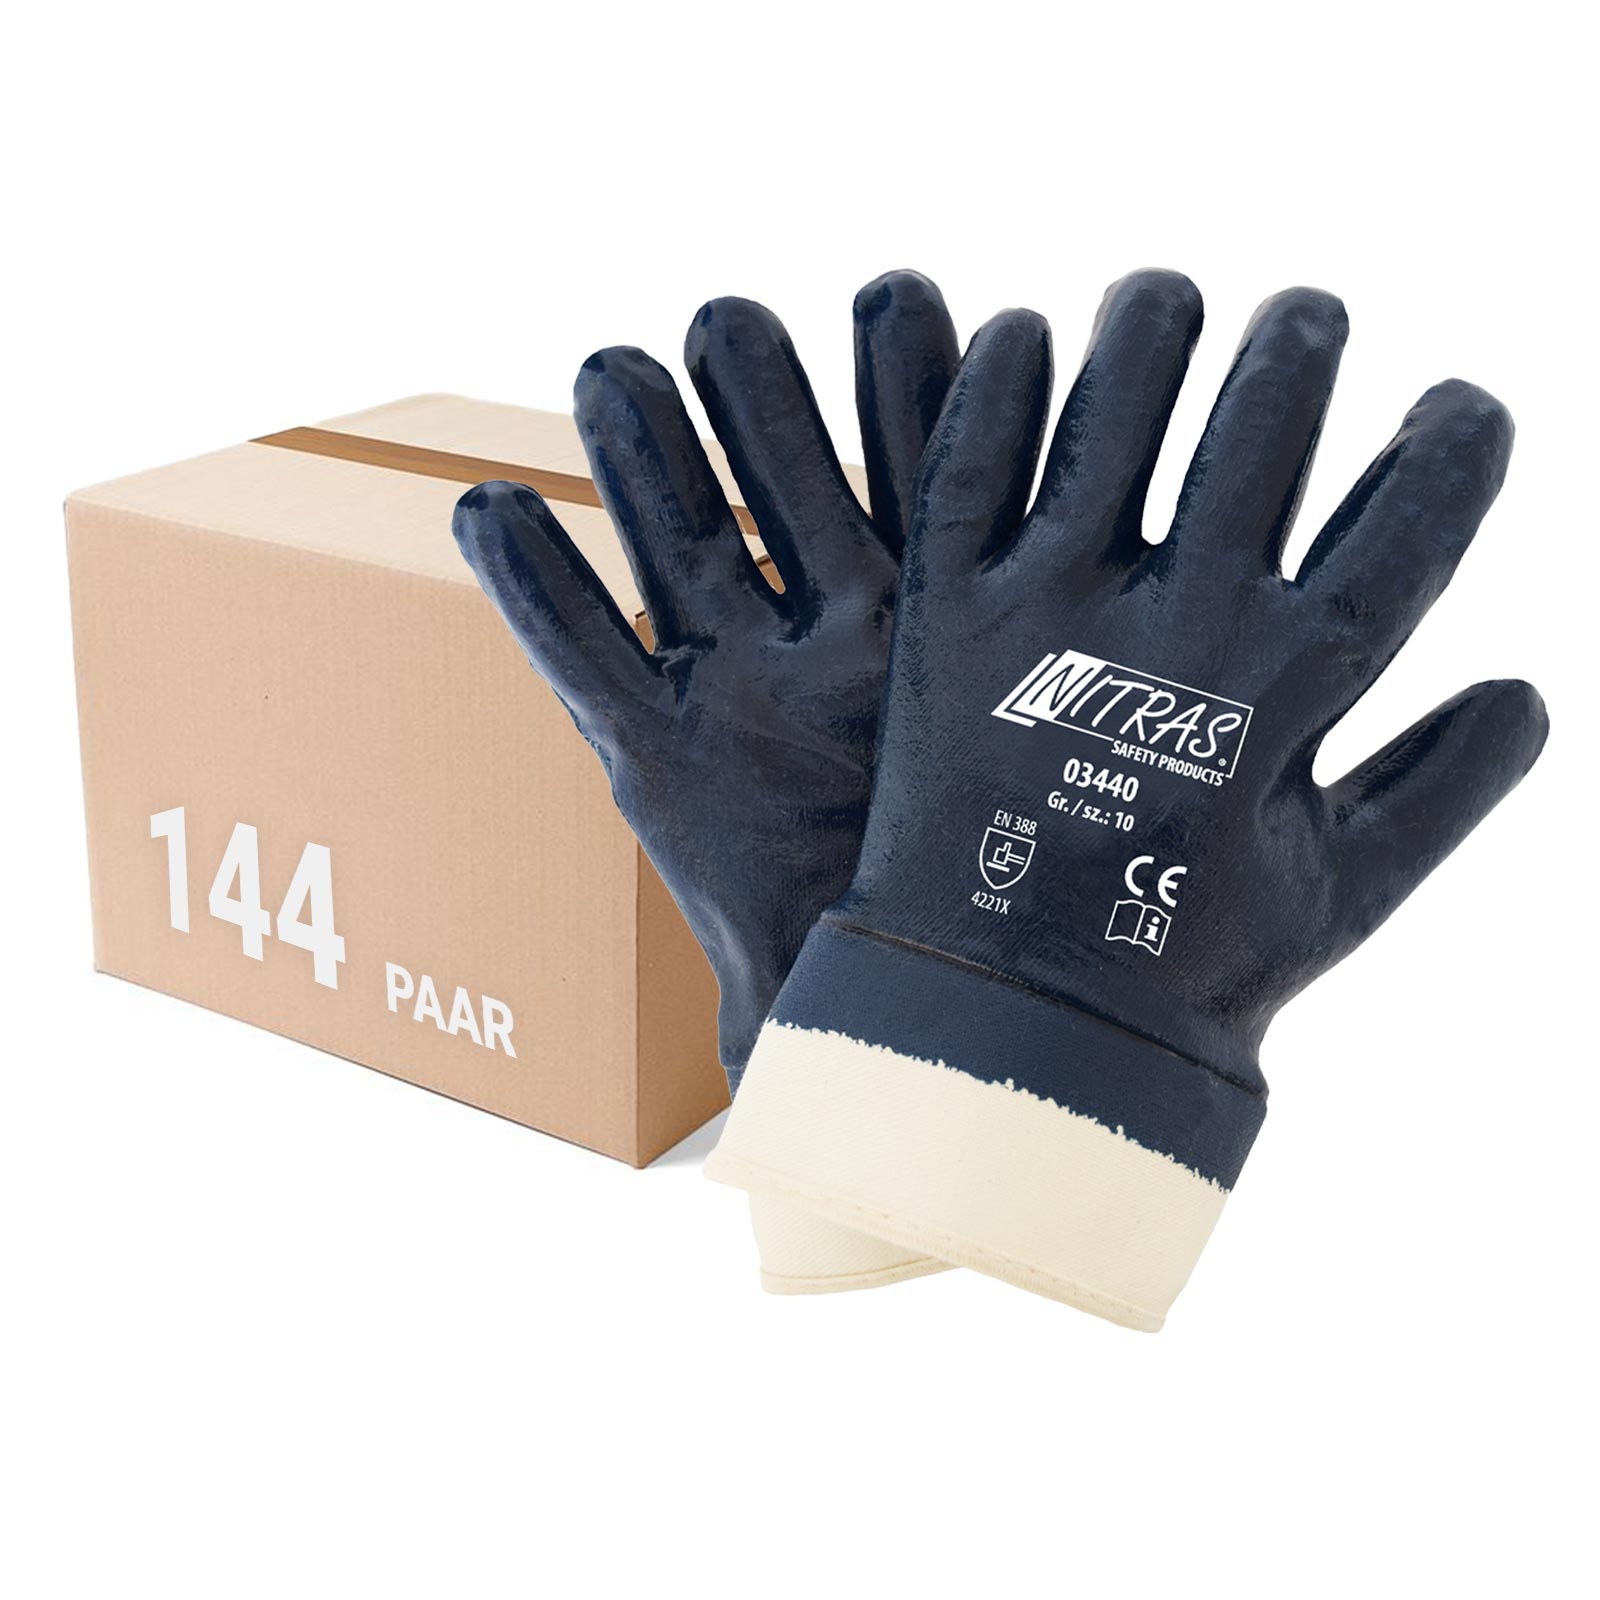 NITRAS 03440 Nitrilhandschuhe Arbeitshandschuhe Handschuhe mit Stulpe - 144 Paar Größe:8 von NITRAS